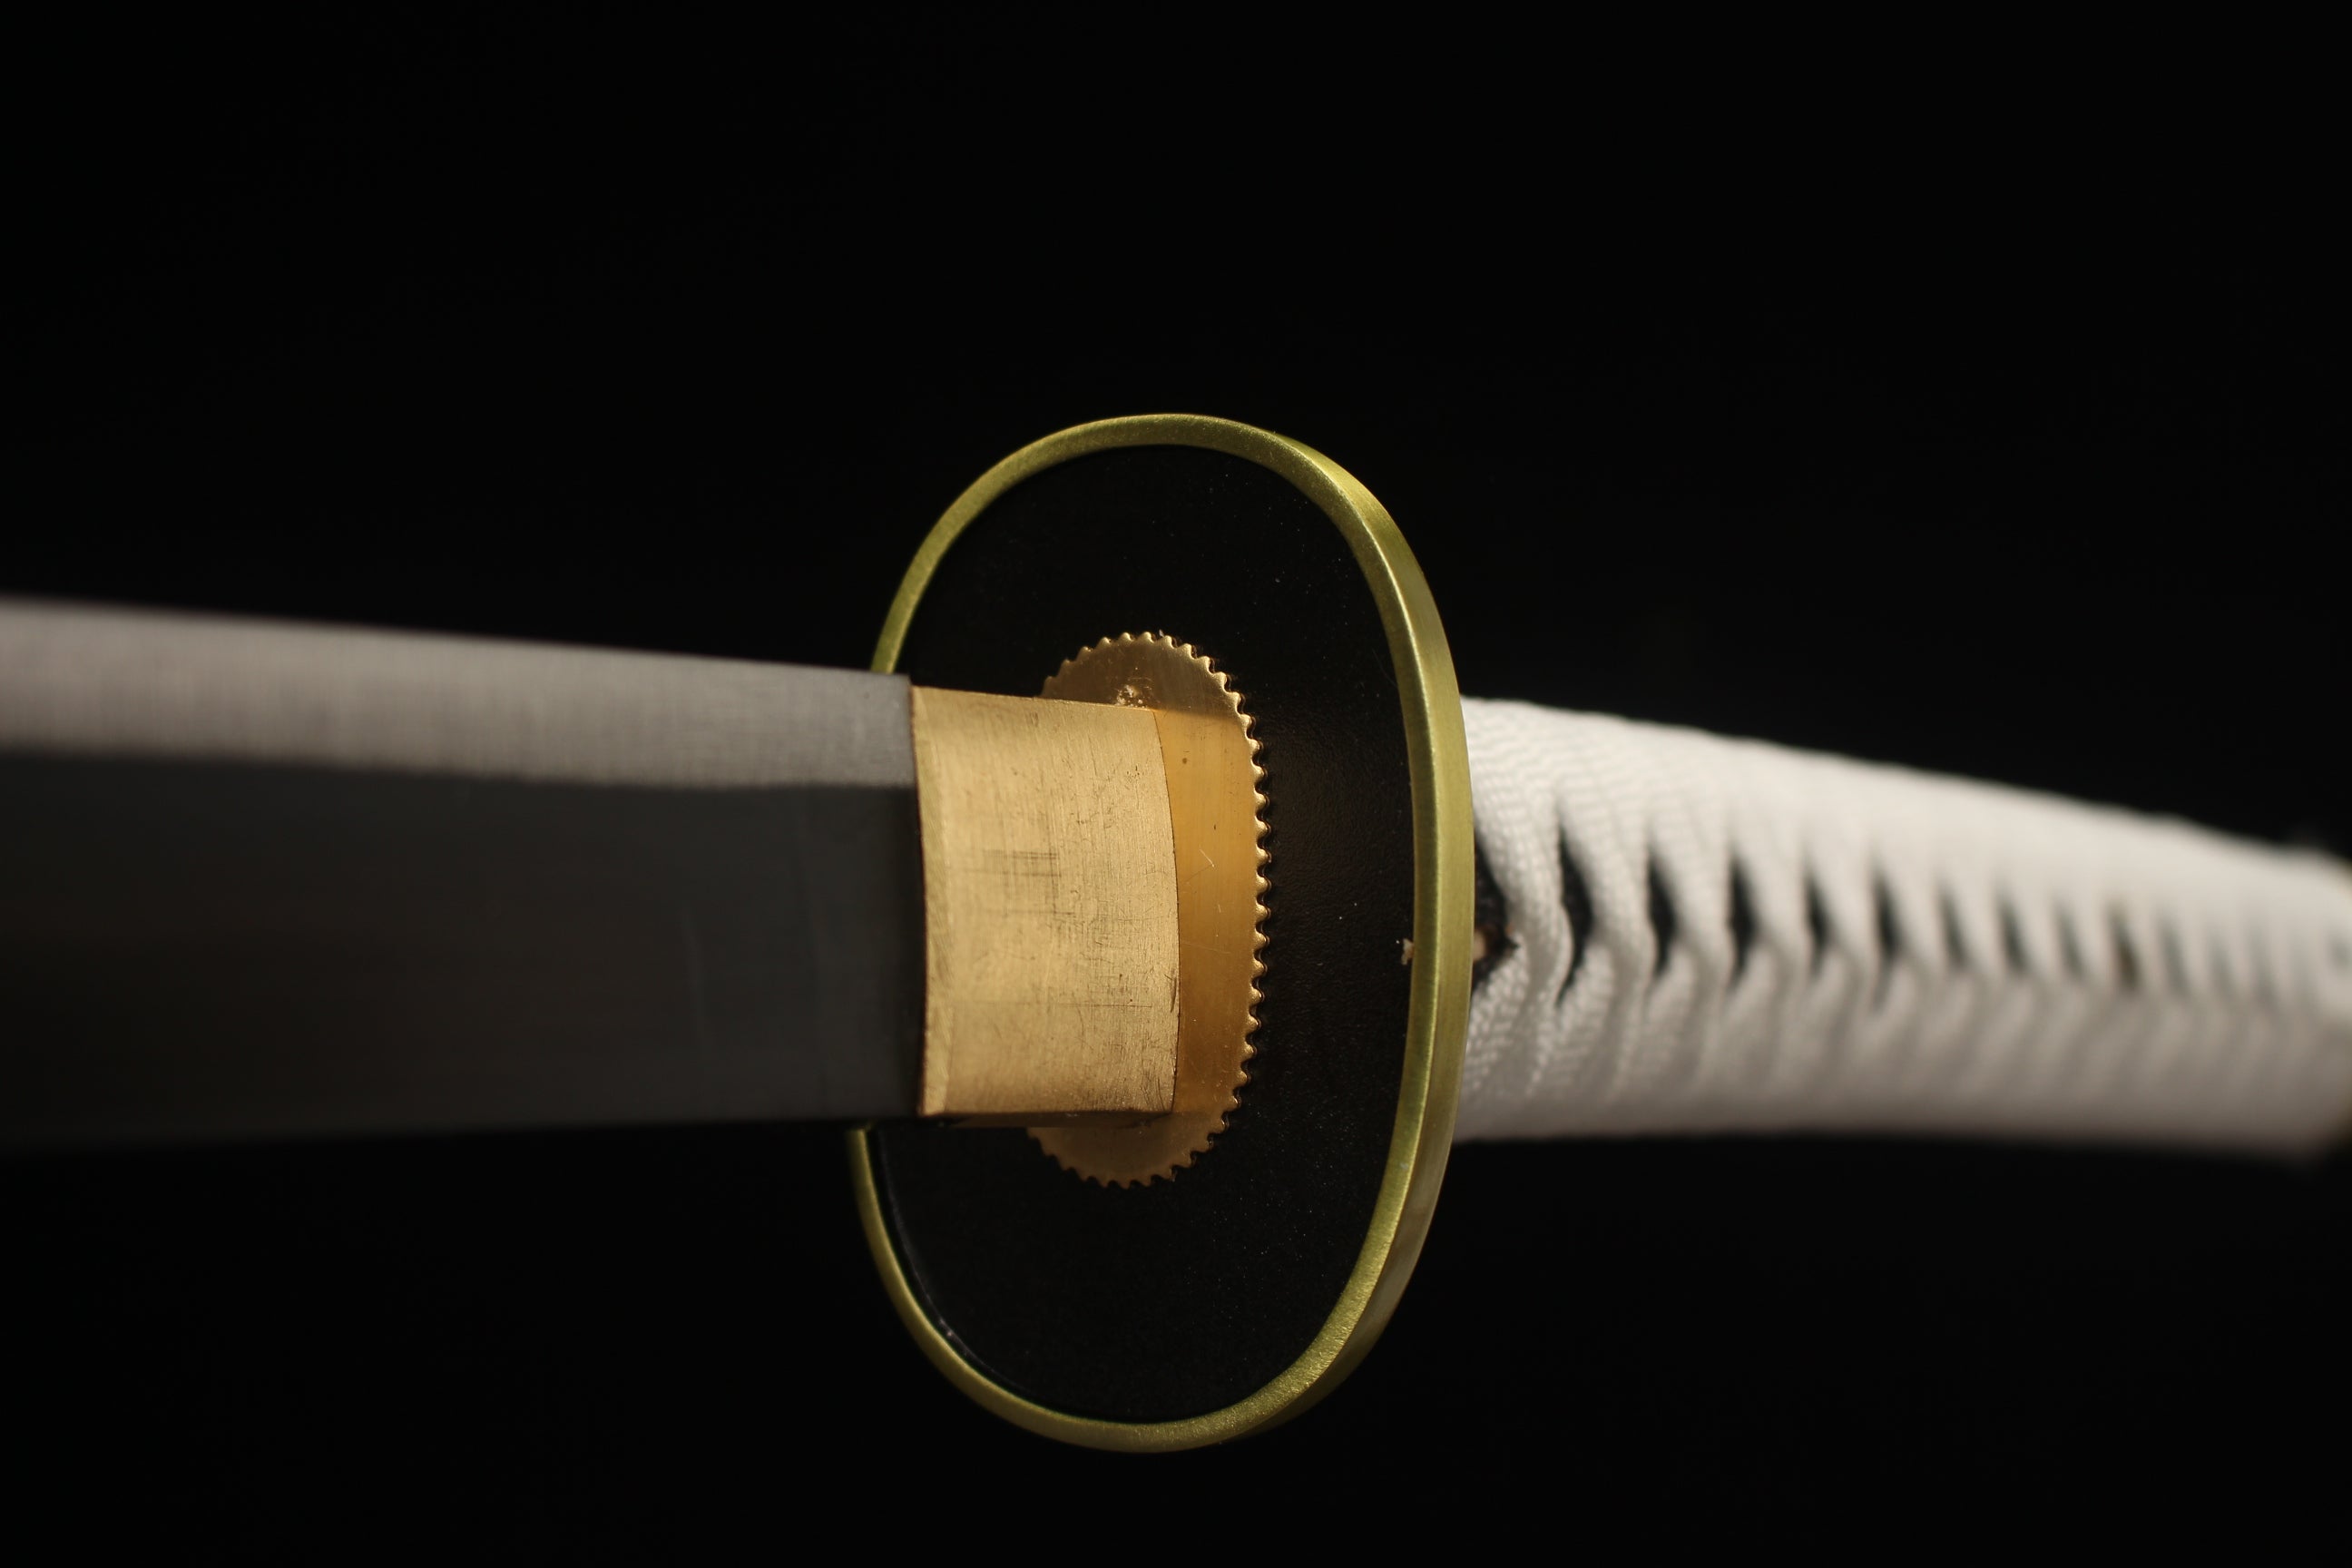 Wado Ichimonji, Einteiler, Anime-Version Katana, japanisches Samurai-Schwert, Kohlenstoffstahl, Longquan-Schwert